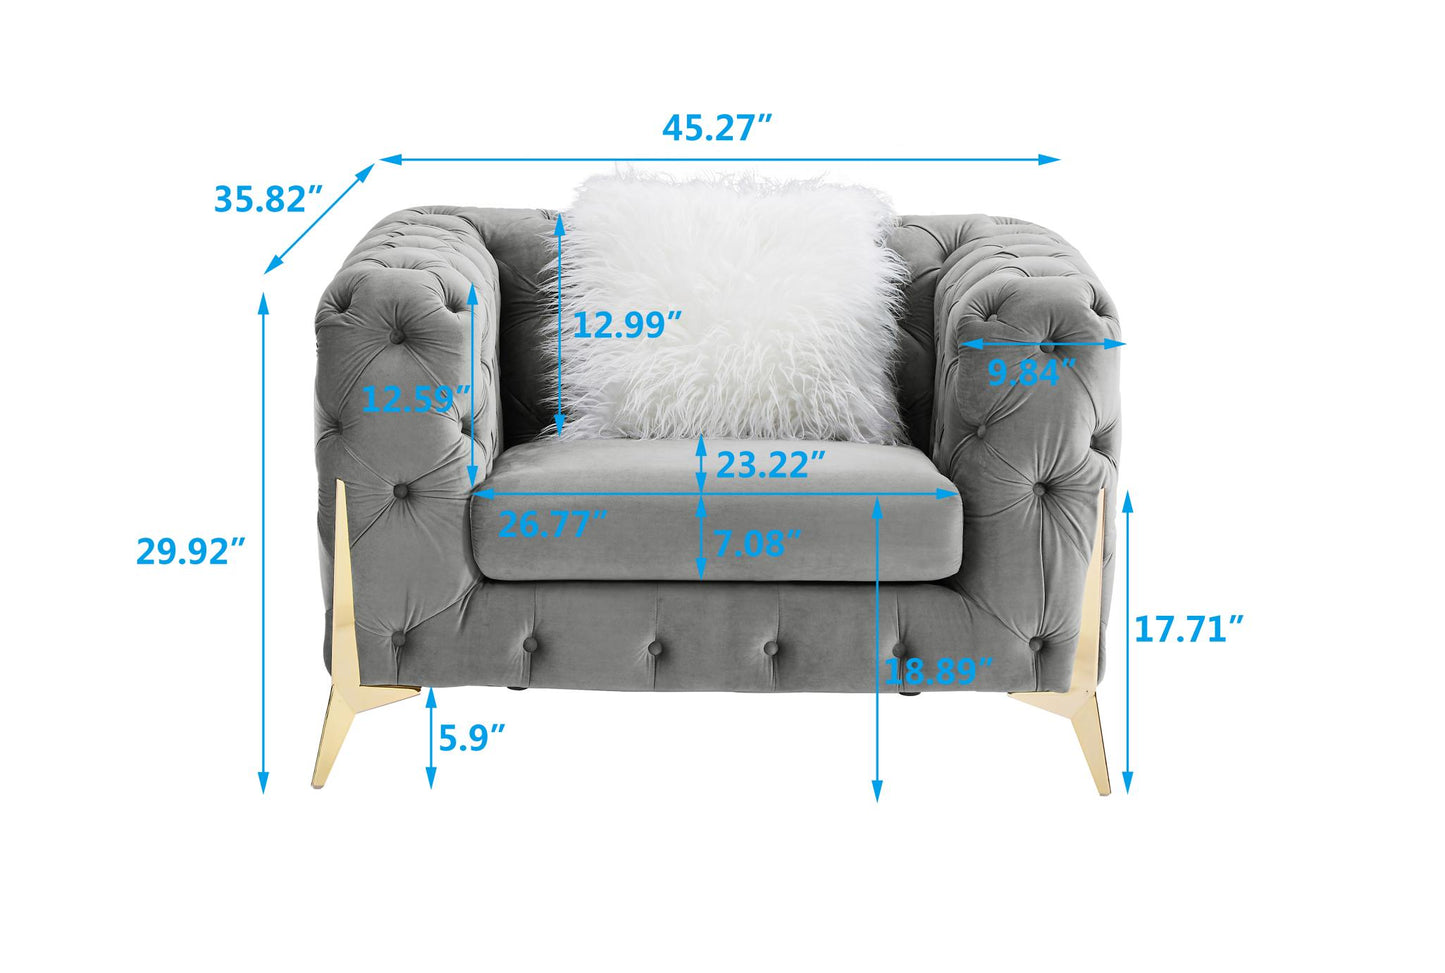 Gray Armchair Velvet Sofa for Living Room Furniture